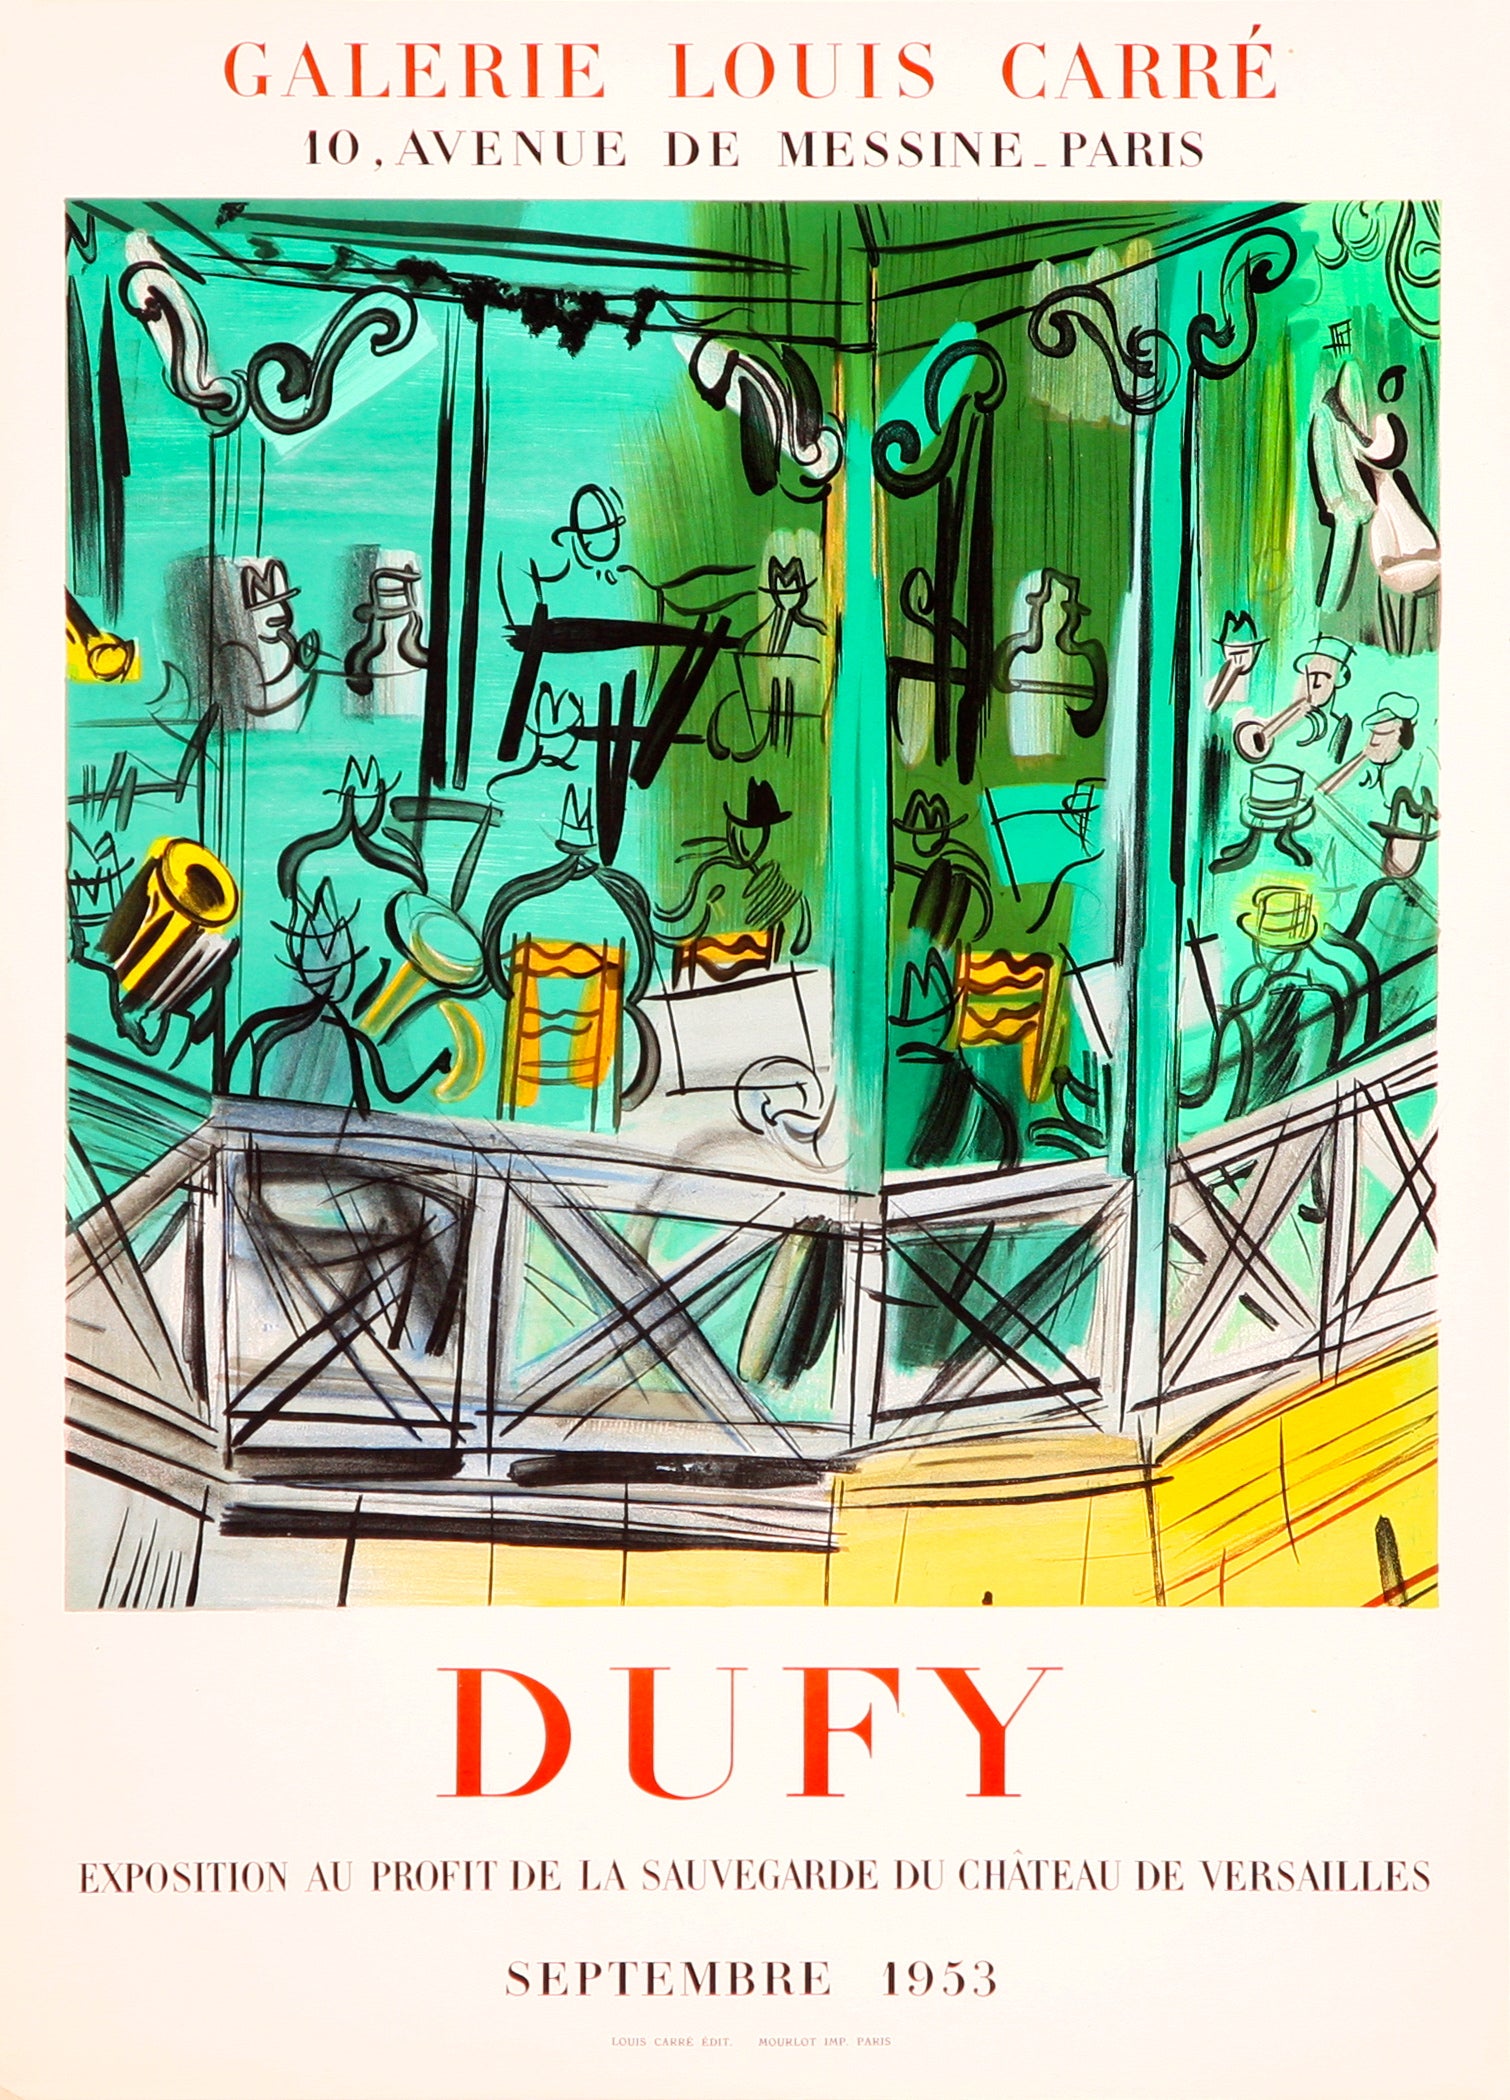 Le Kiosque a Musique - Galerie Louis Carré (after) Raoul Dufy, 1953 - Mourlot Editions - Fine_Art - Poster - Lithograph - Wall Art - Vintage - Prints - Original